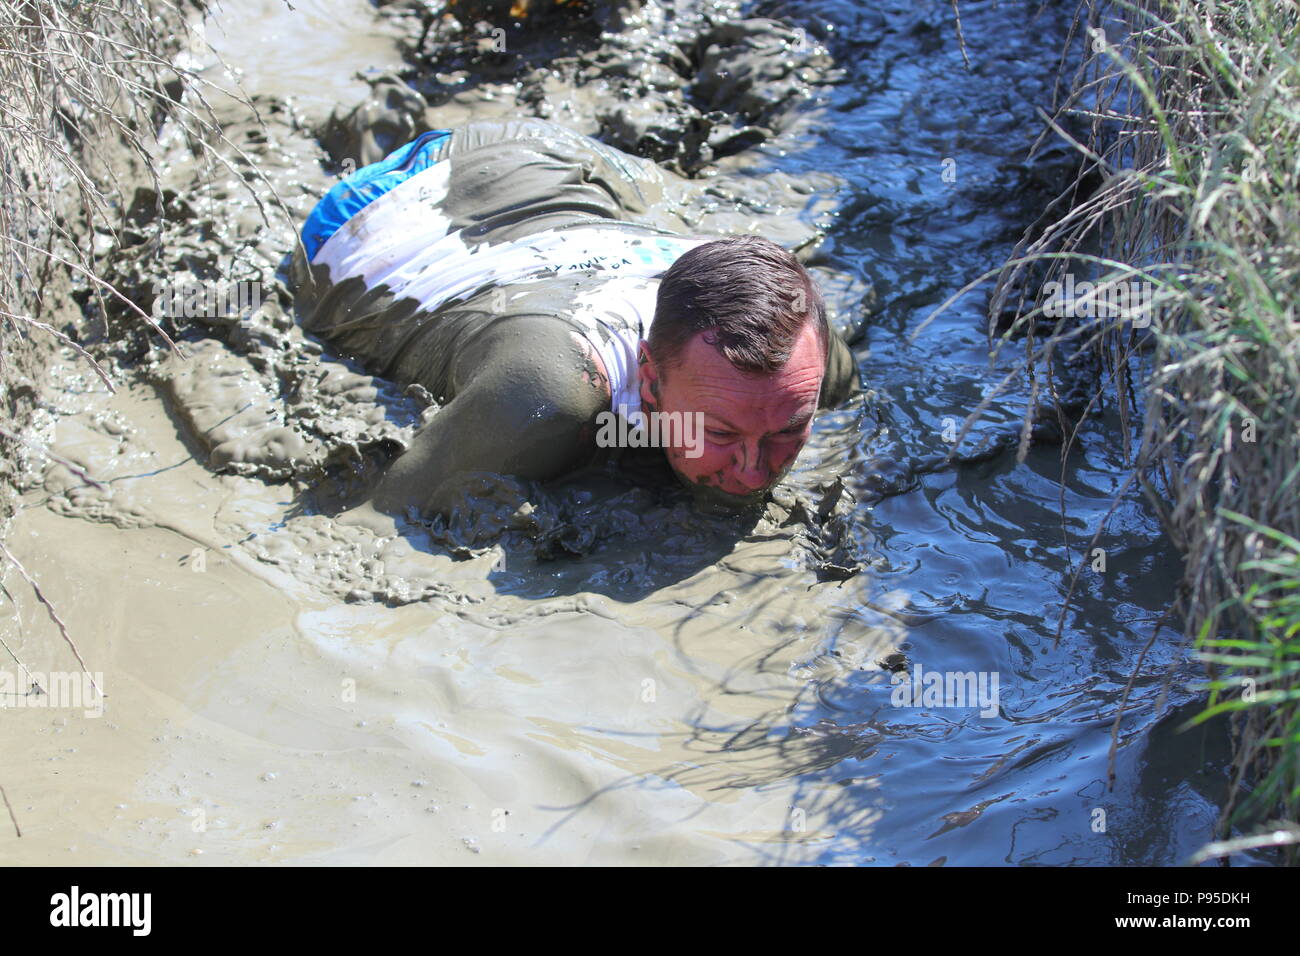 Nuotare nel fango immagini e fotografie stock ad alta risoluzione - Alamy